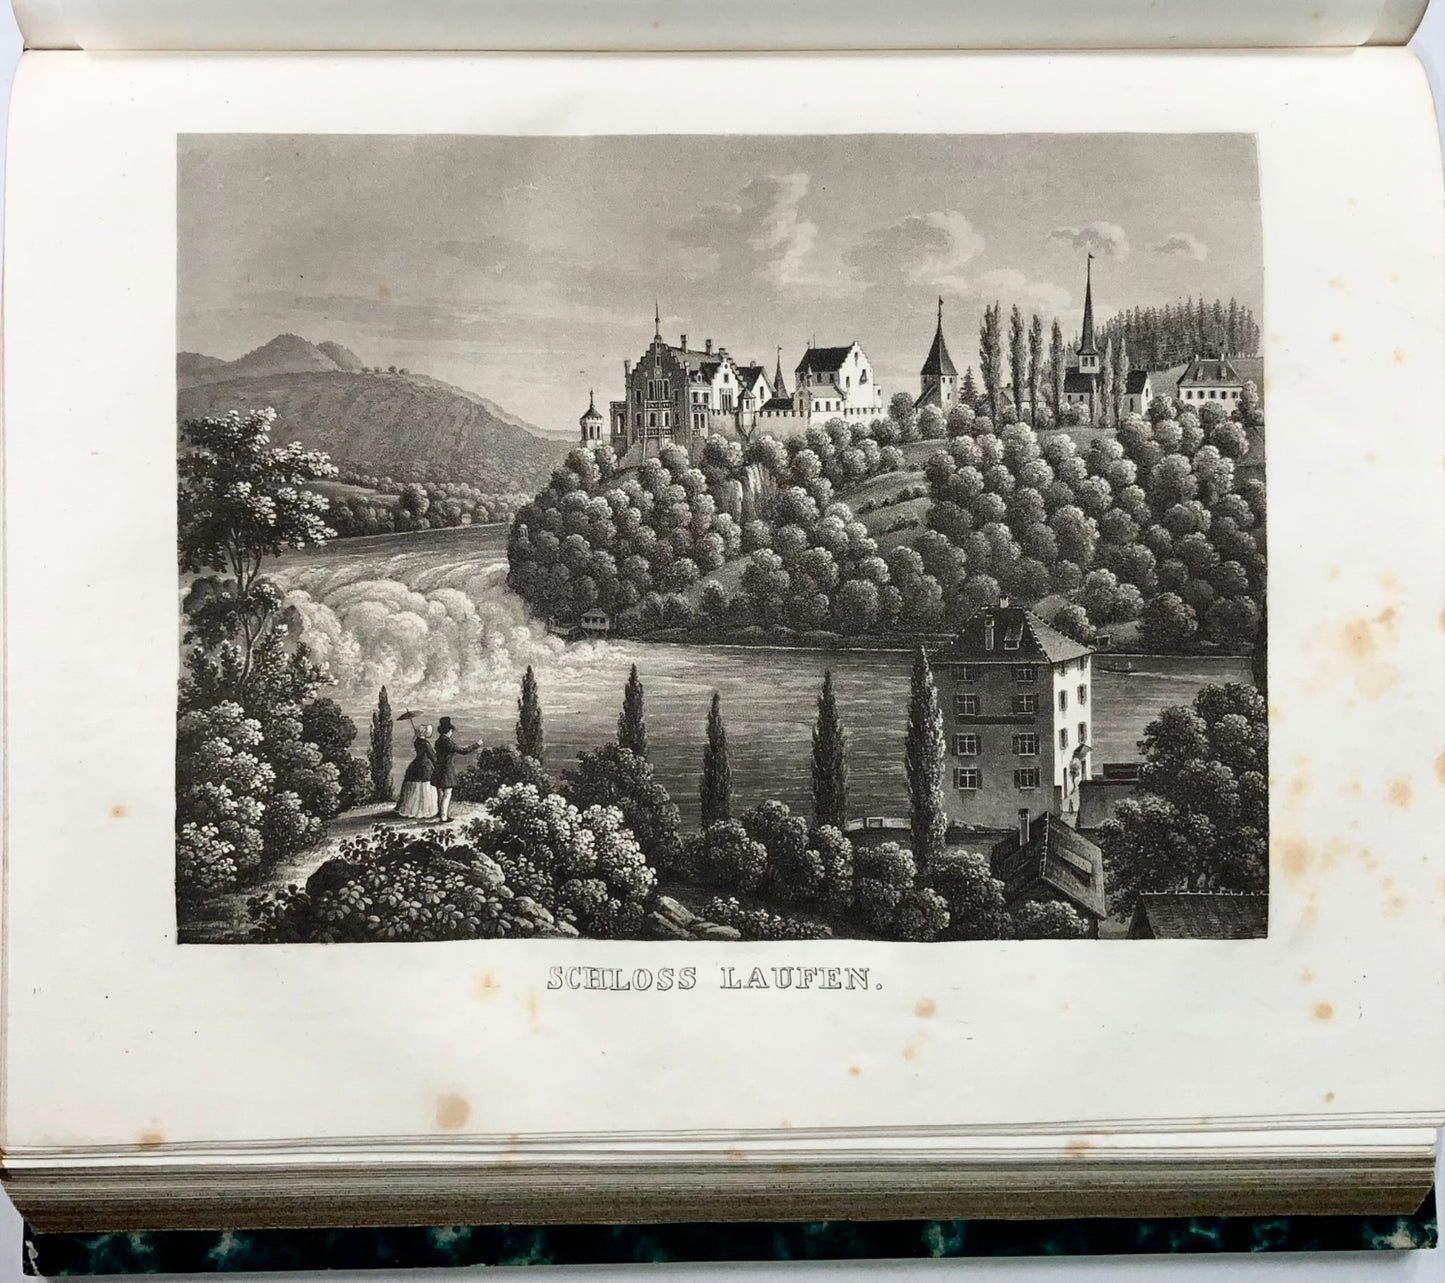 1853 Chronique du canton de Zurich, Suisse, superbes aquatintes, 1840-50